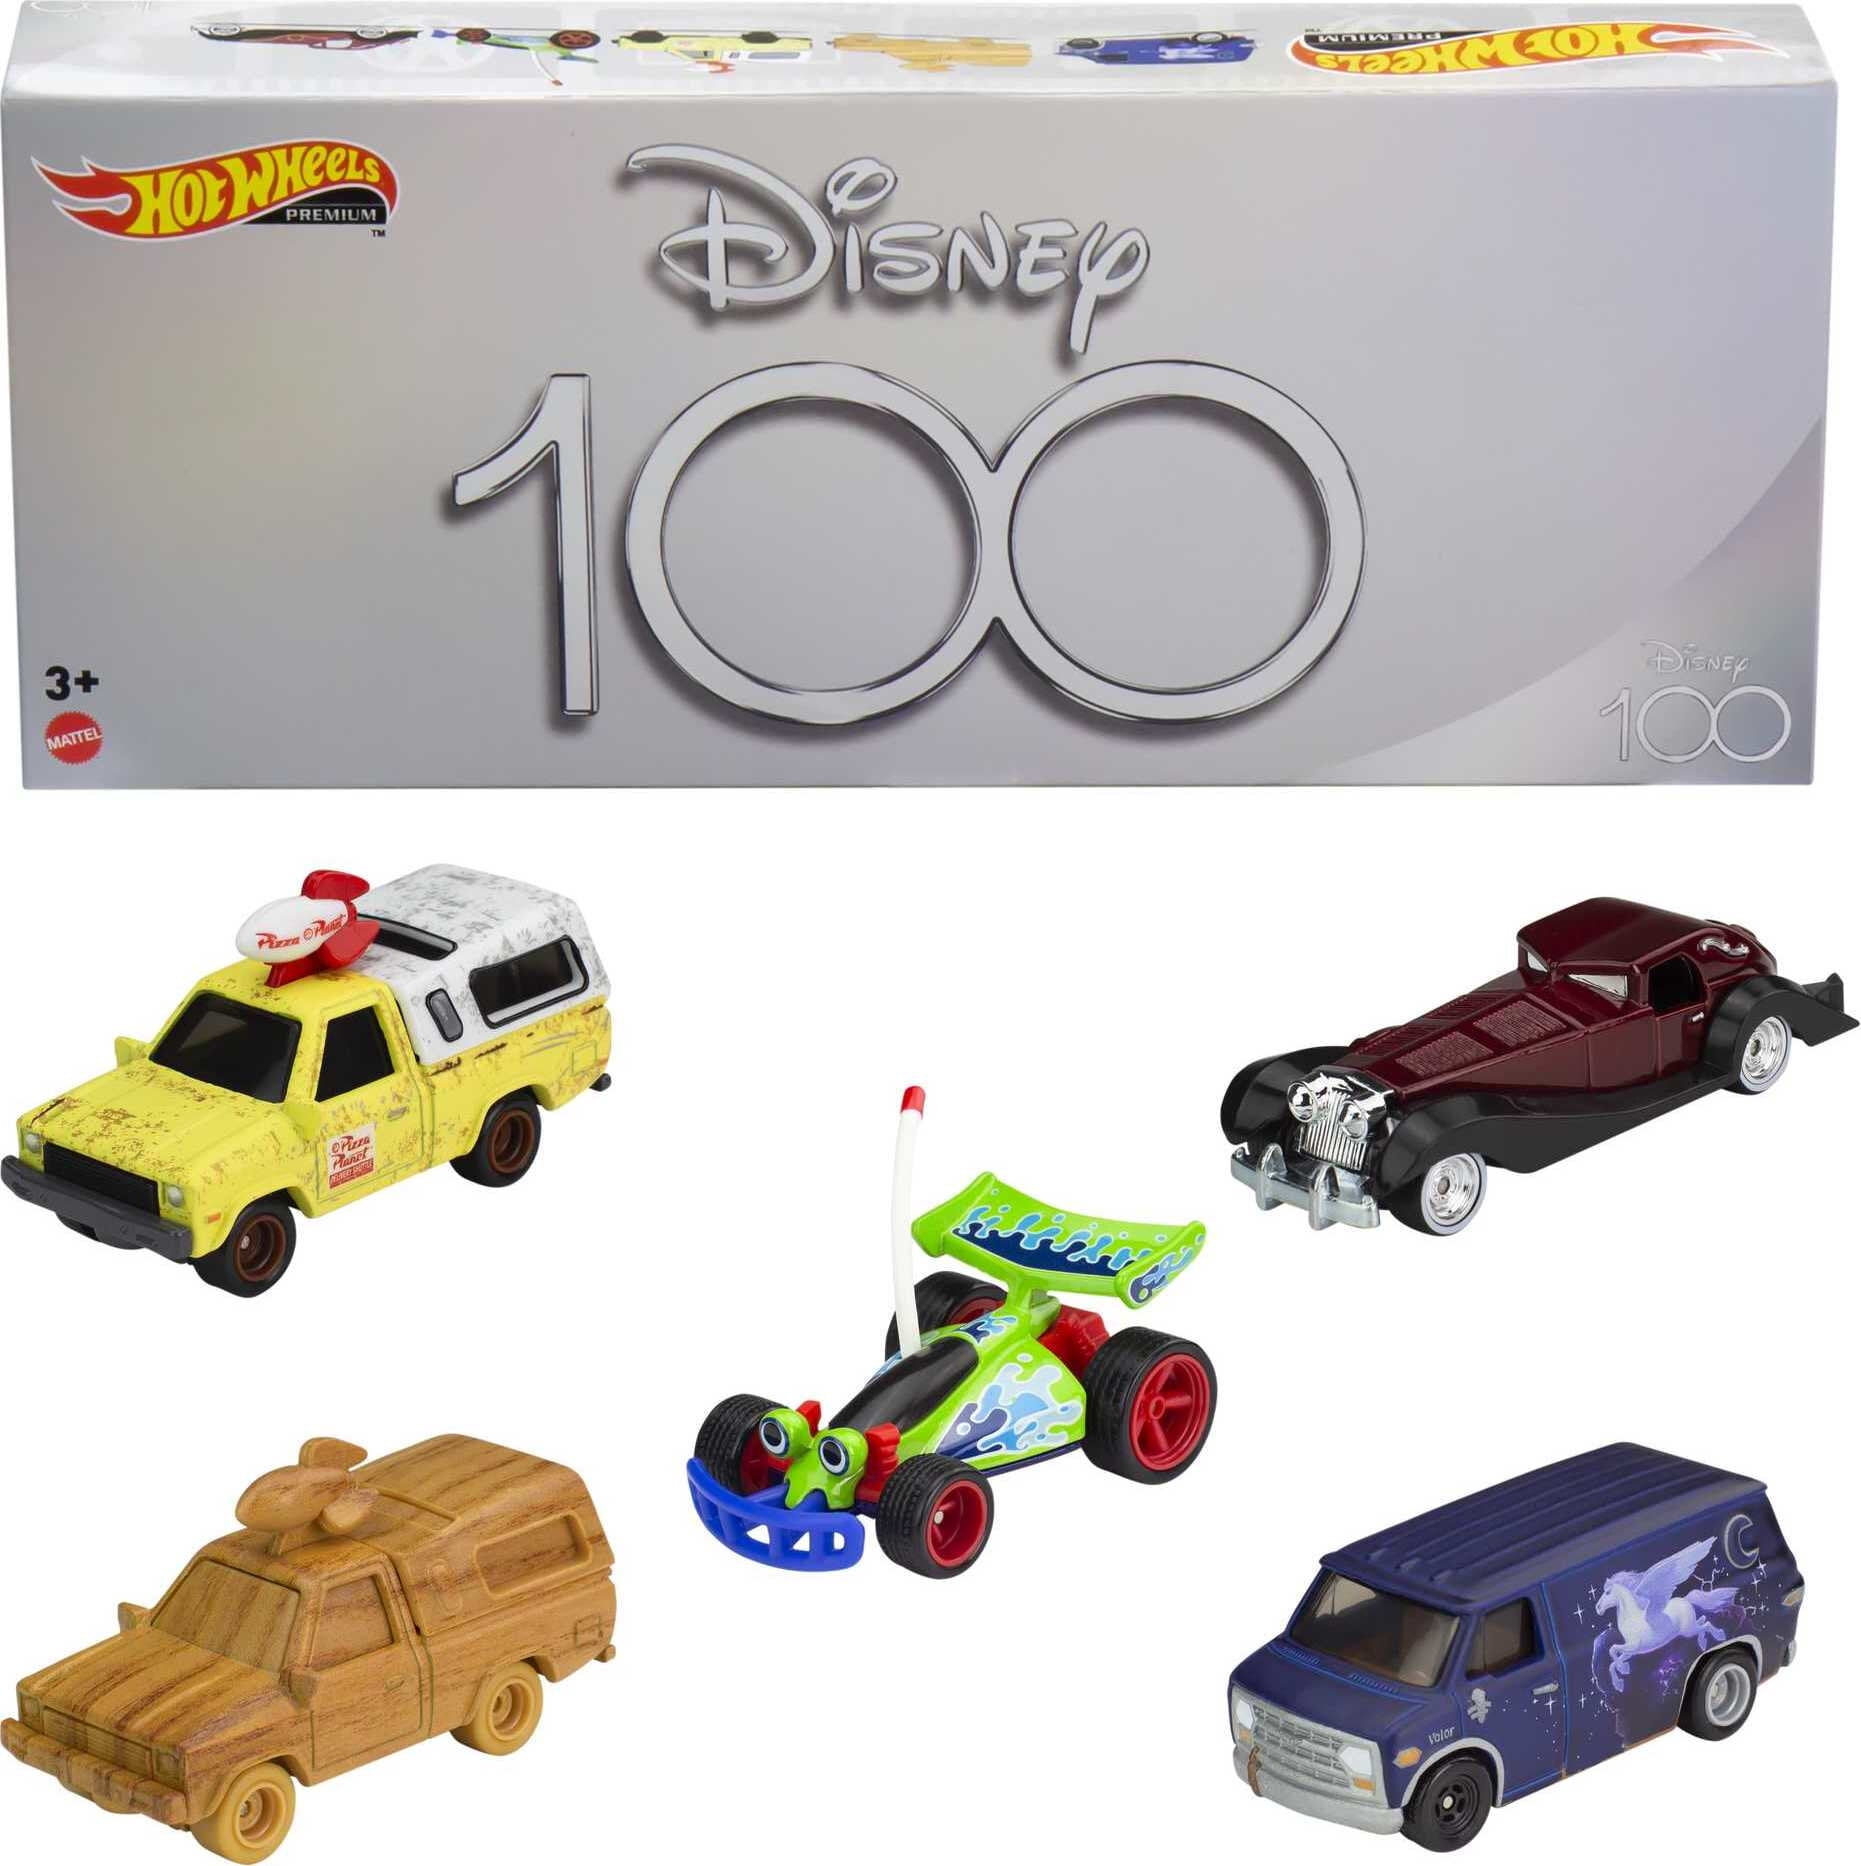 Hot Wheels Premium Disney 100 Bundle, 5 Premium Replica Die-Cast Cars 